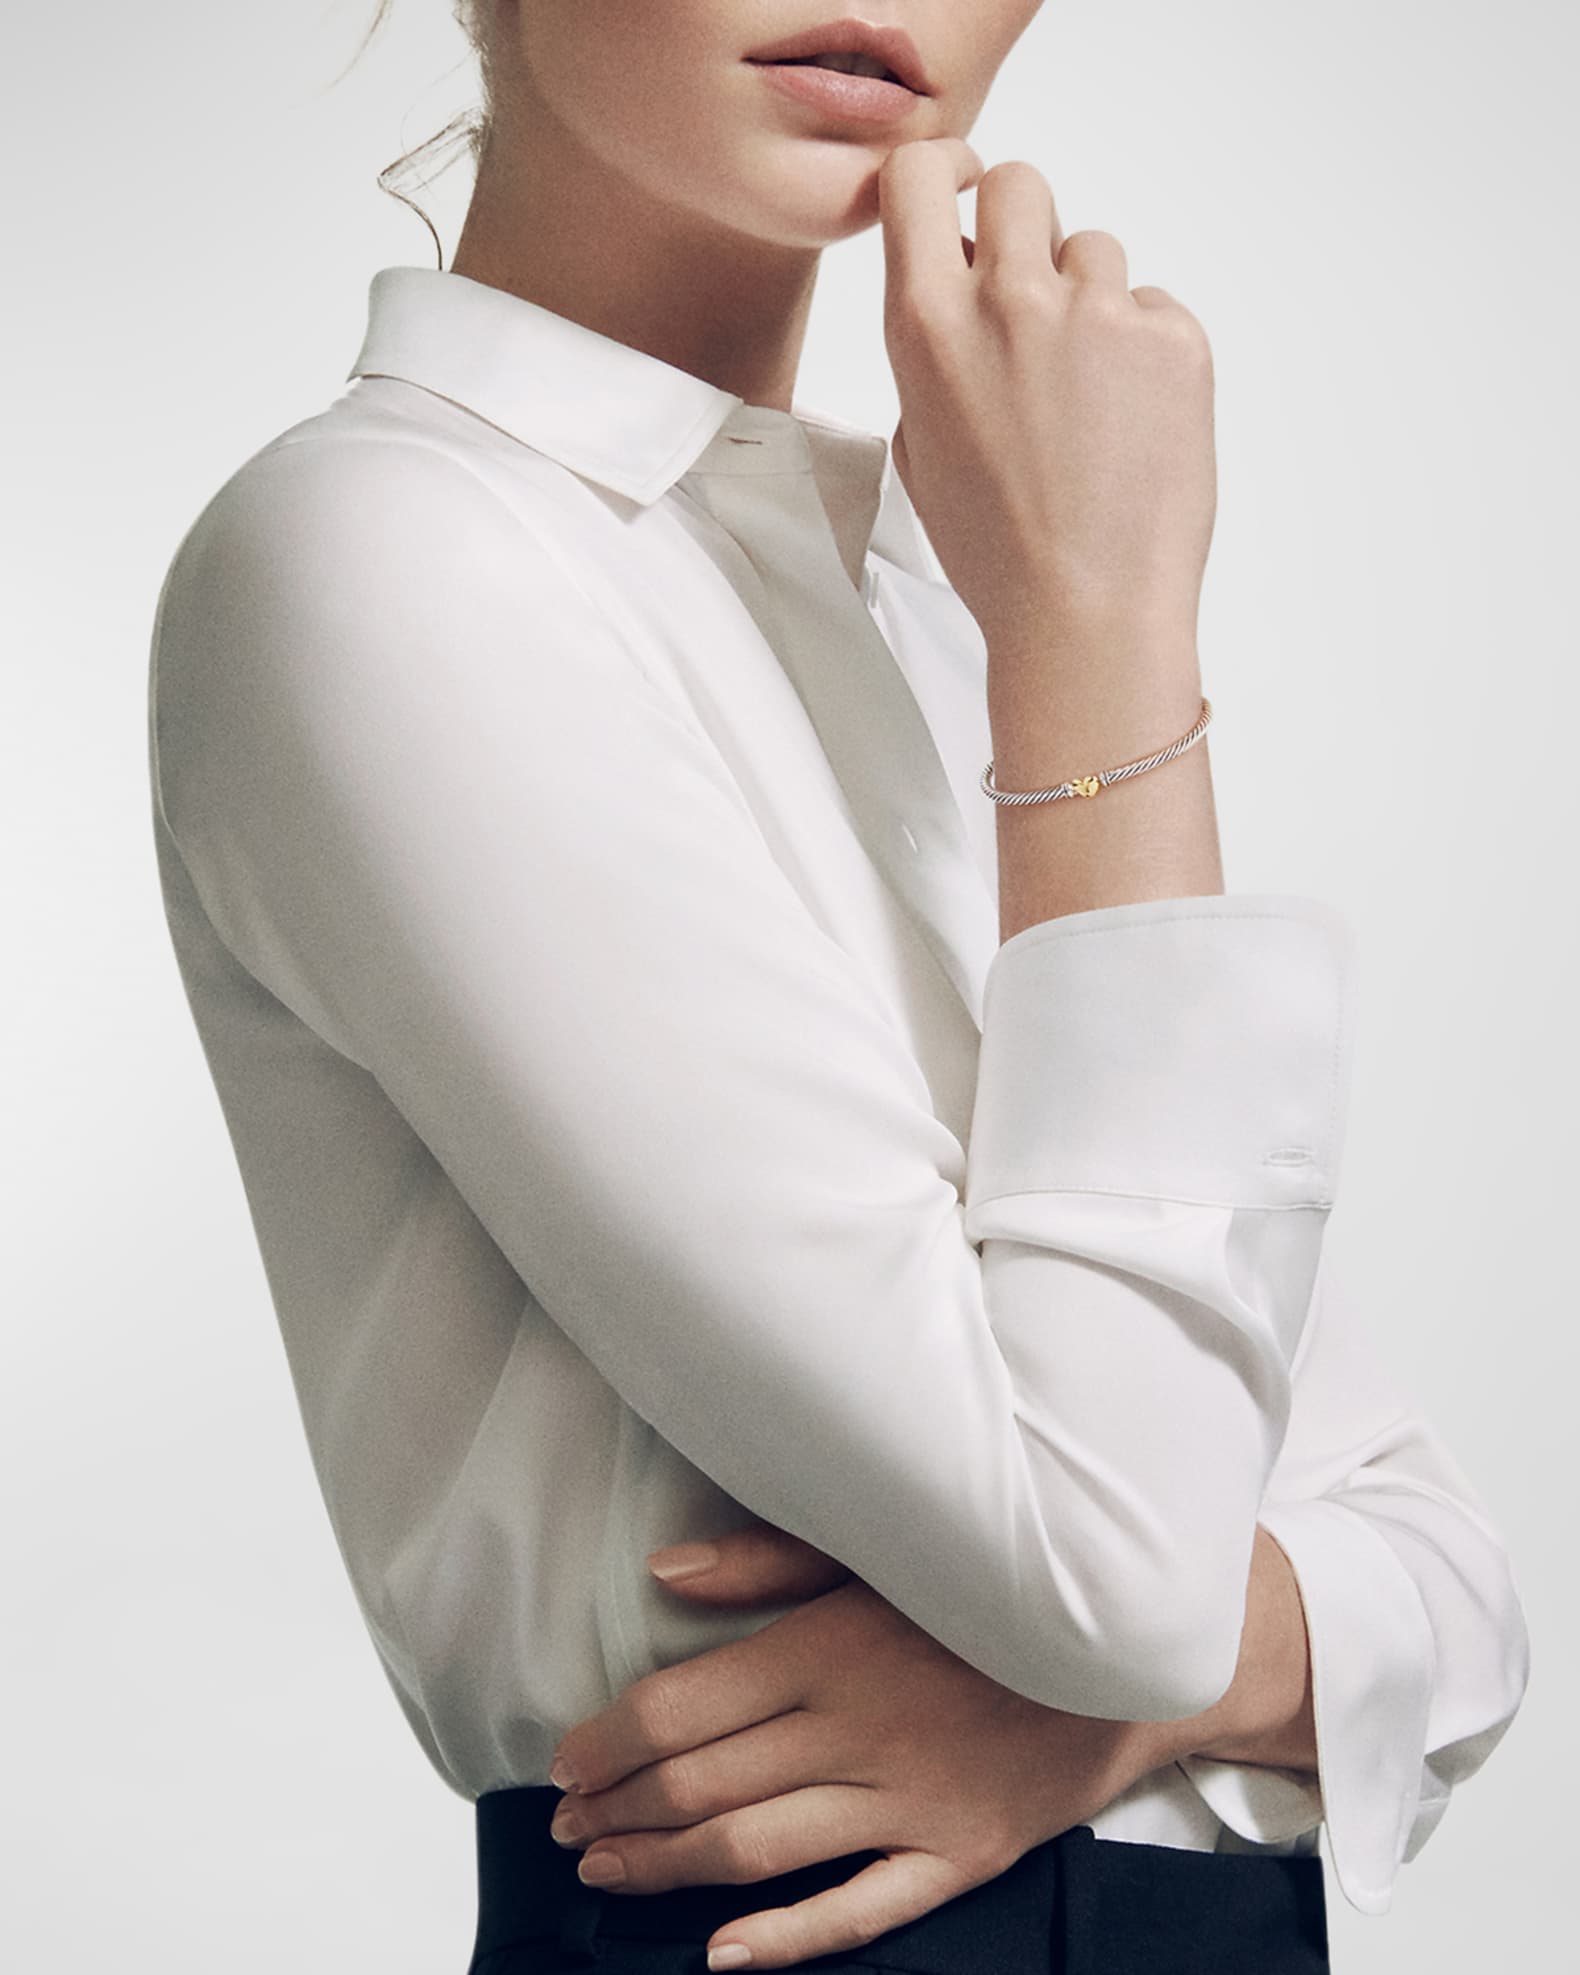 Louis Vuitton // David Yurman  Bracelets outfit, Cartier love